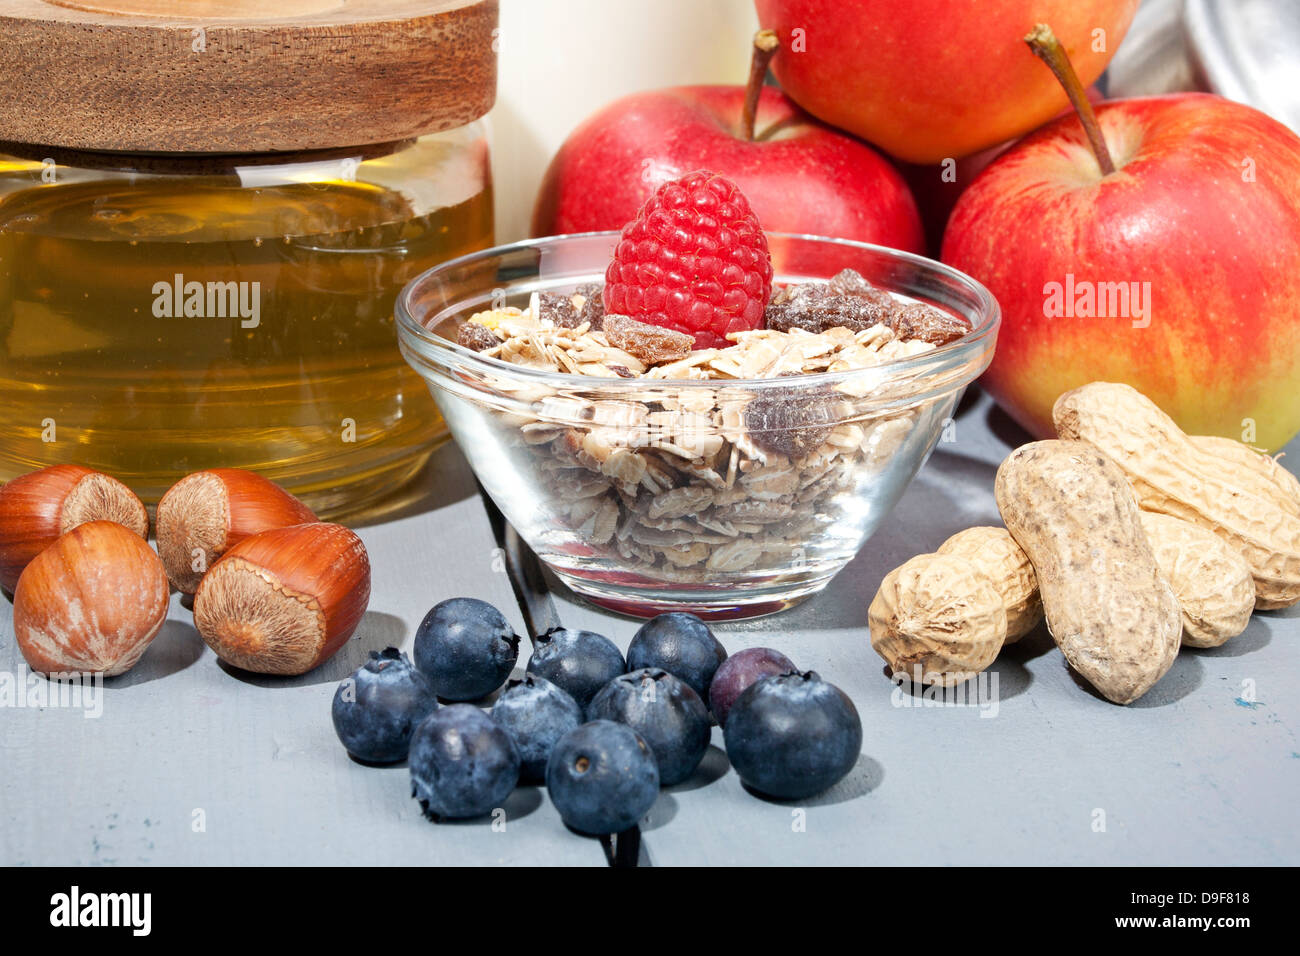 Cereali con frutta, miele e noci, cereali con frutta, miele e noci Foto Stock